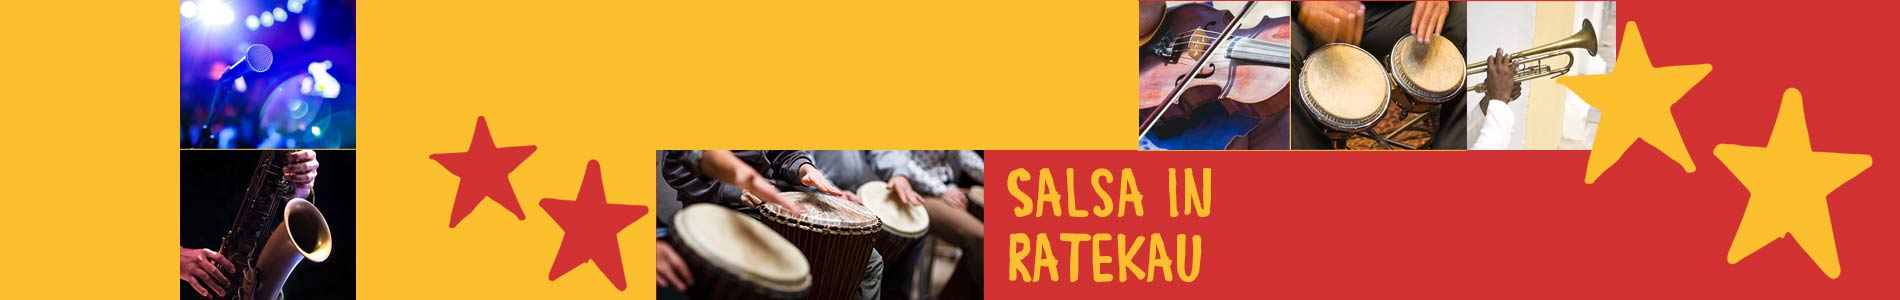 Salsa in Ratekau – Salsa lernen und tanzen, Tanzkurse, Partys, Veranstaltungen